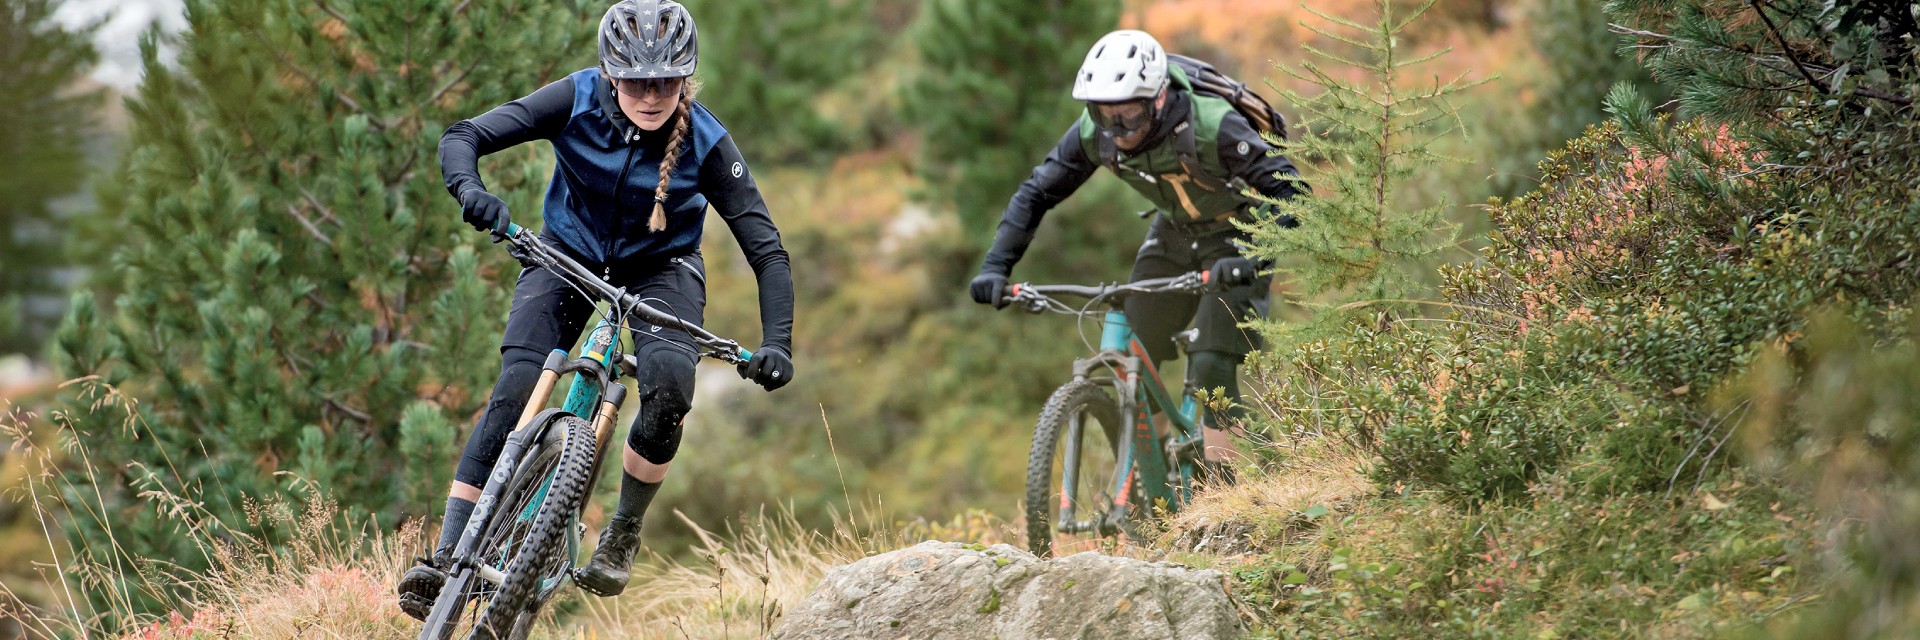 Odpowiednia odzież do jazdy na rowerze górskim zapewni Tobie niezbędny komfort i ochronę.